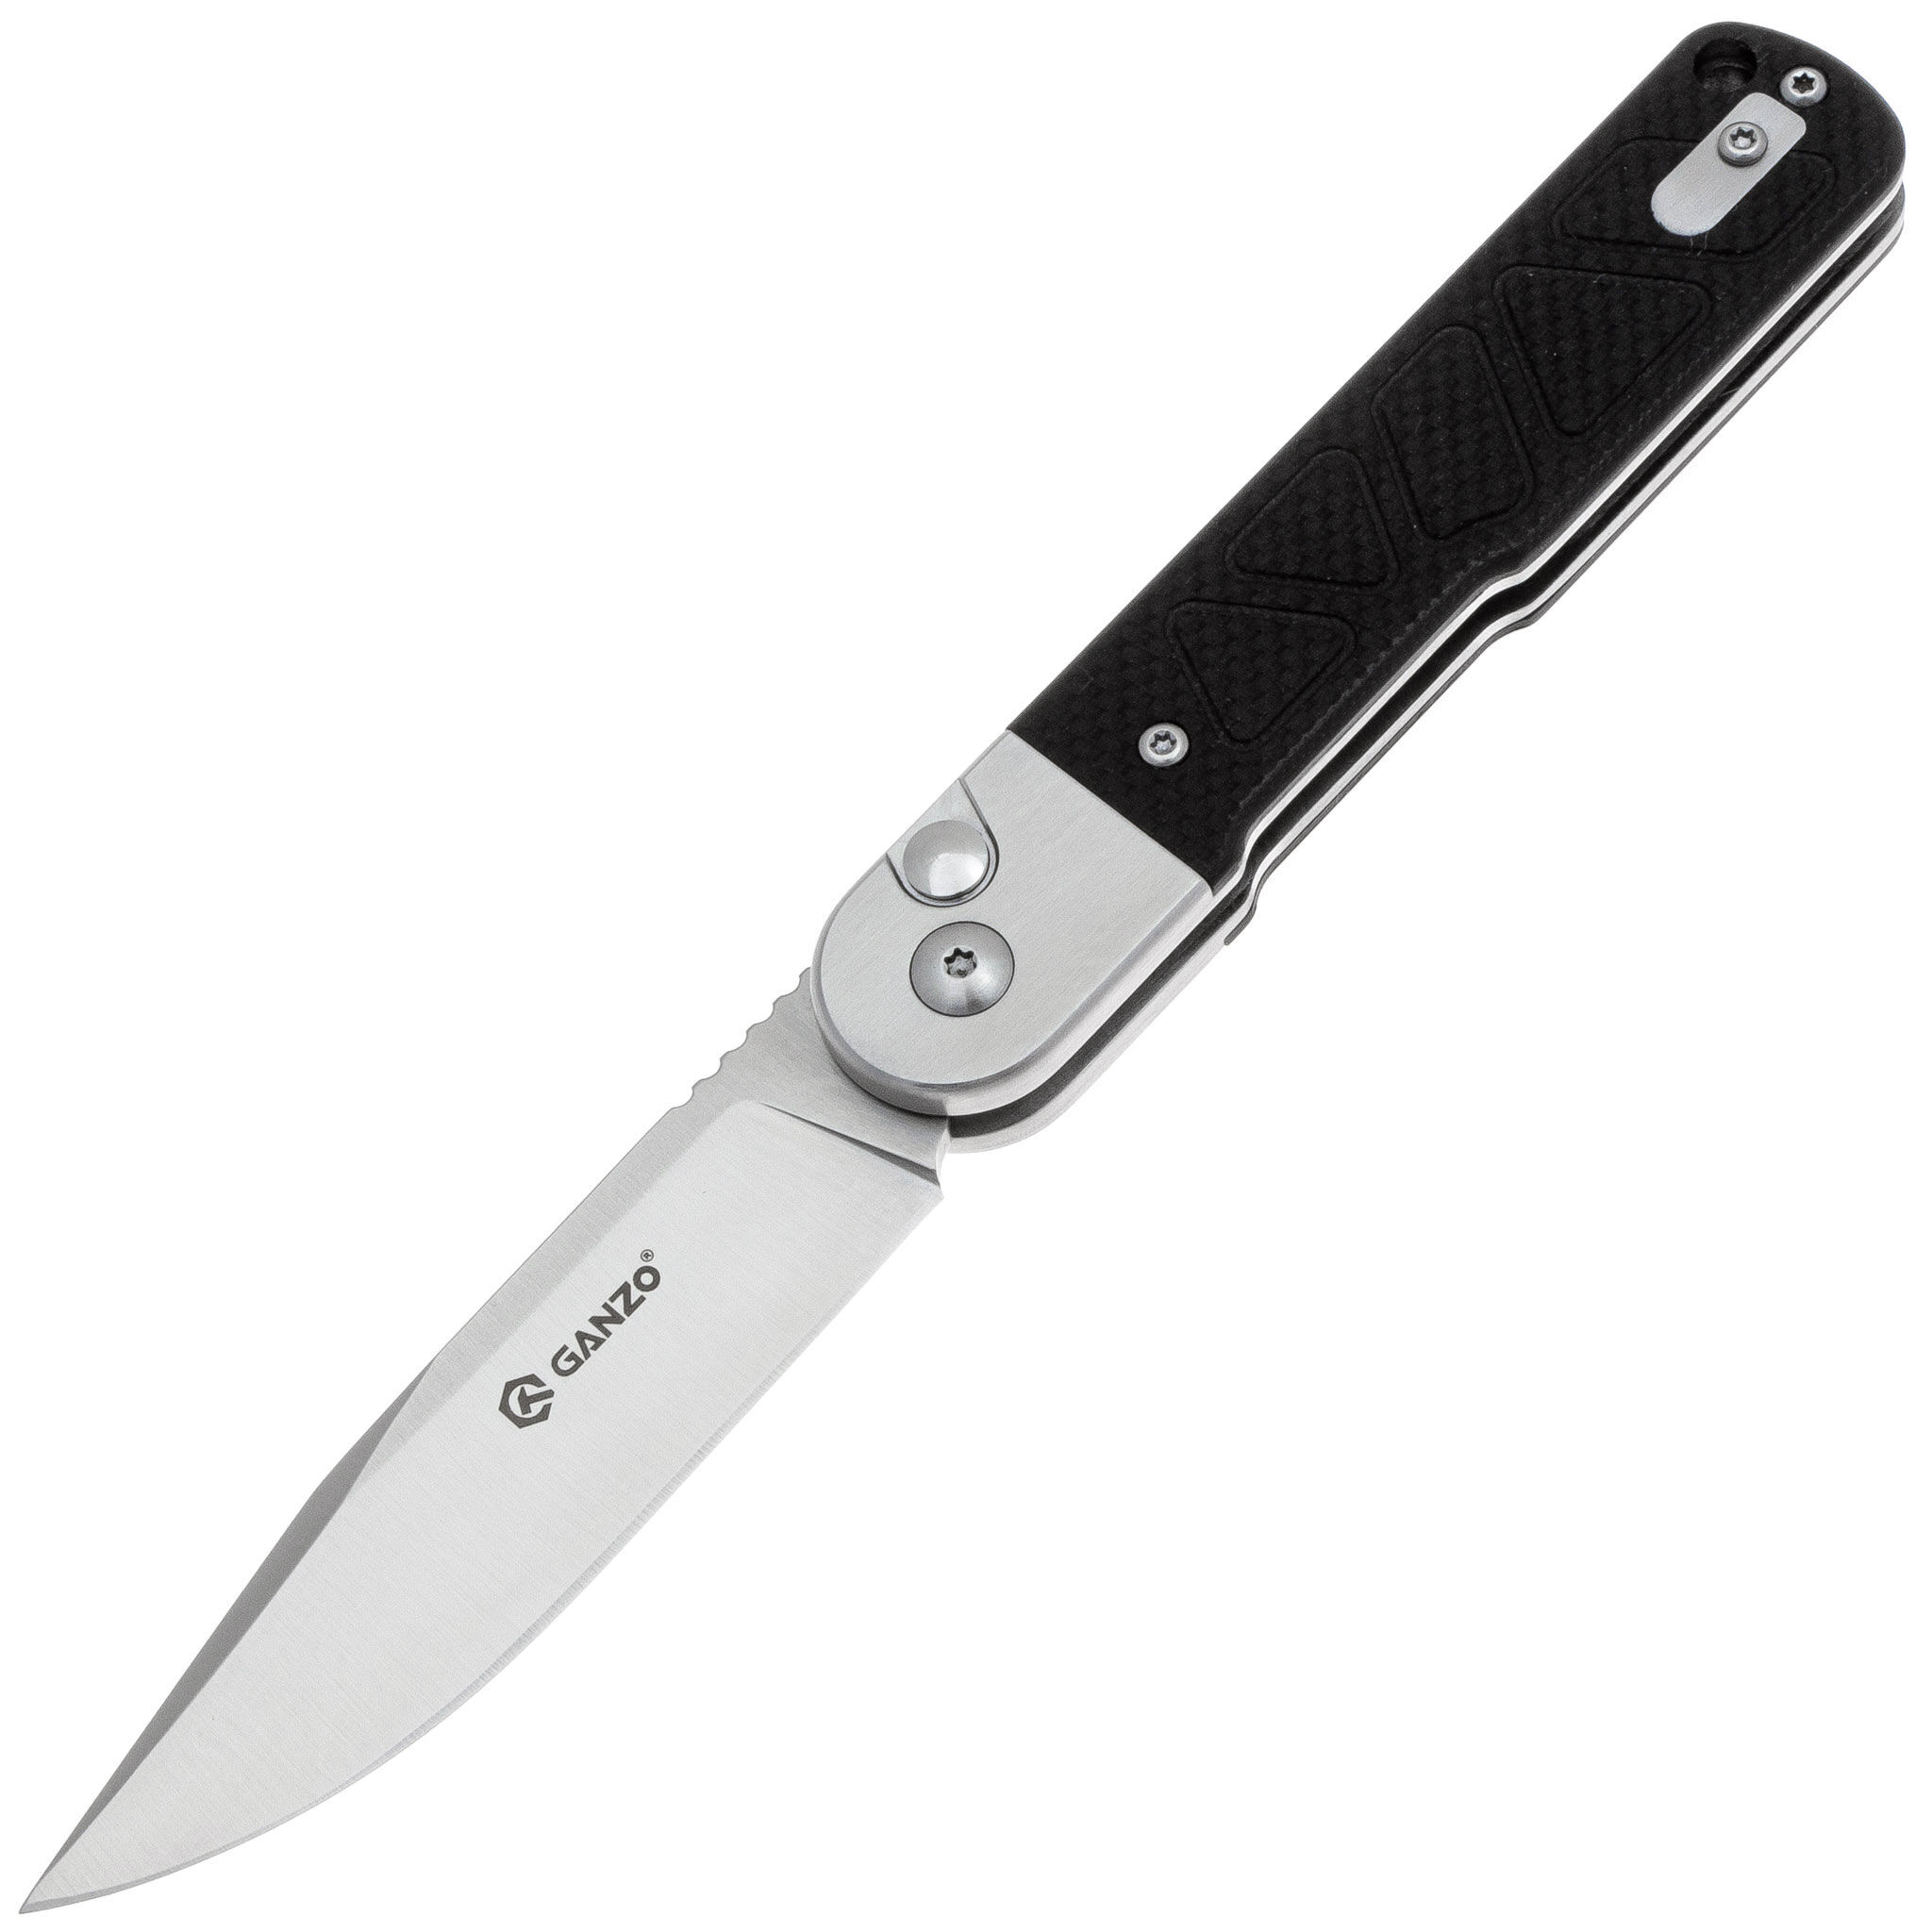 Складной нож Ganzo G767-BK черный, Бренды, Ganzo